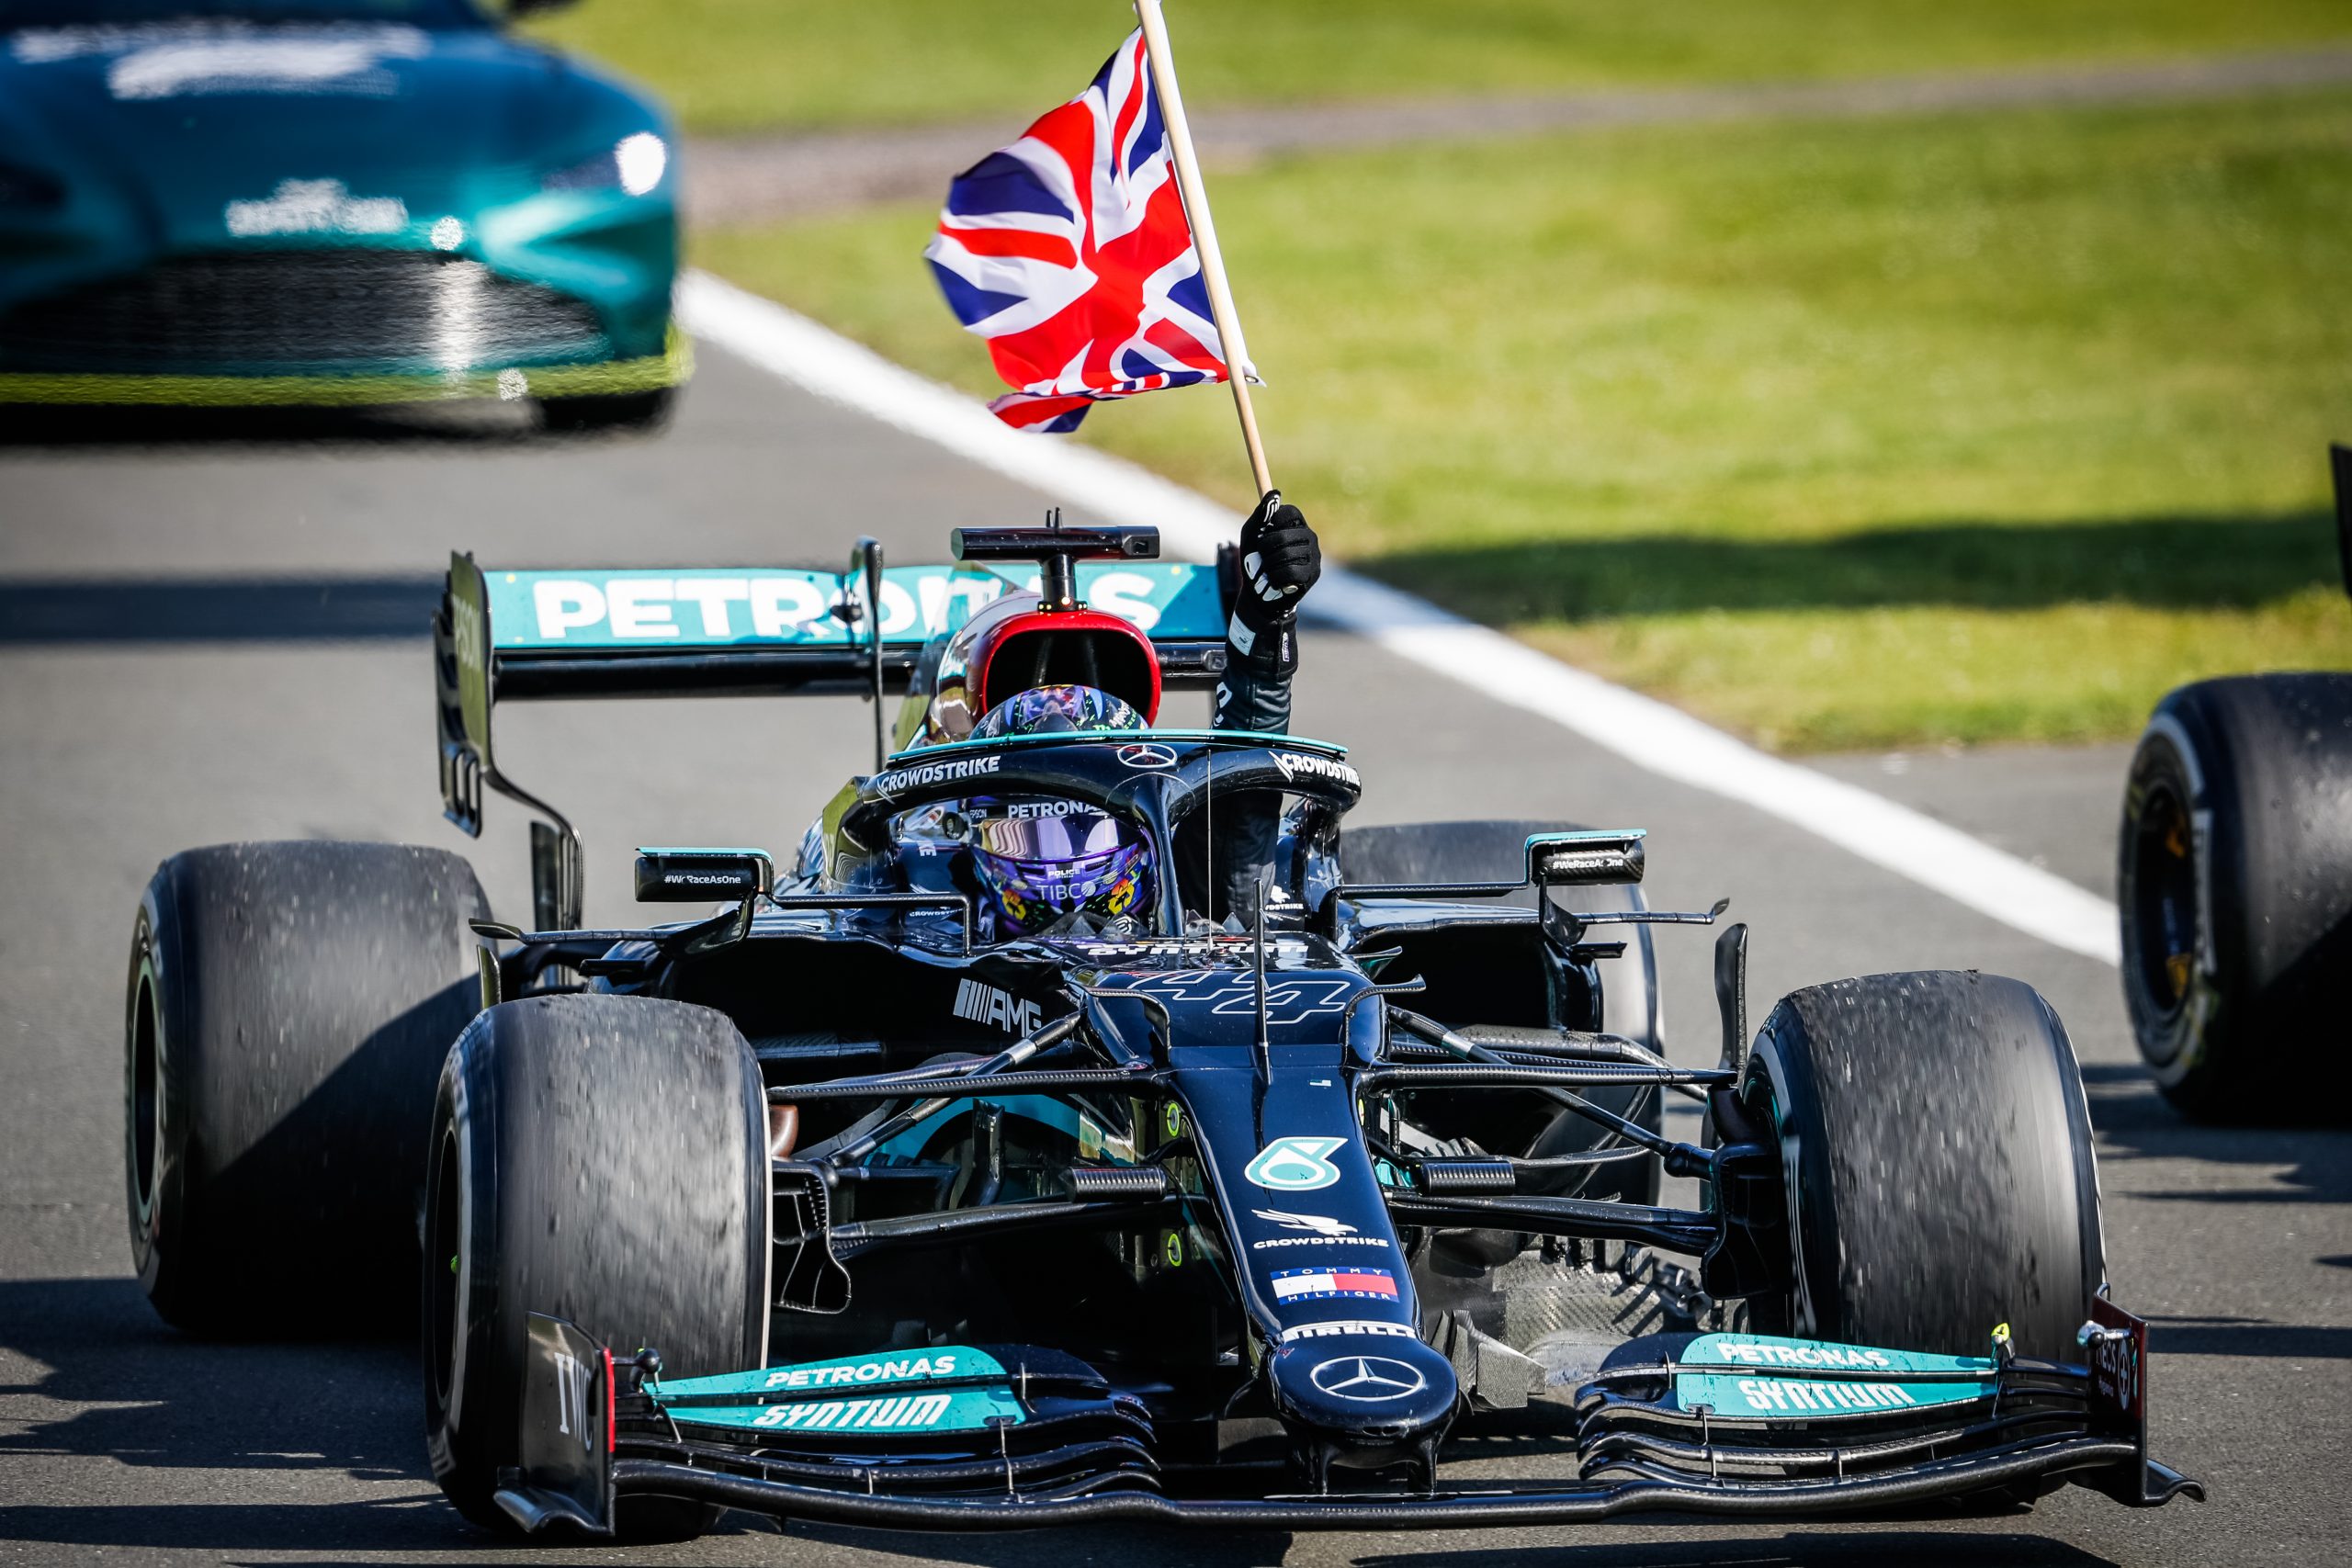 F1 – BRITISH GRAND PRIX 2021 – RACE